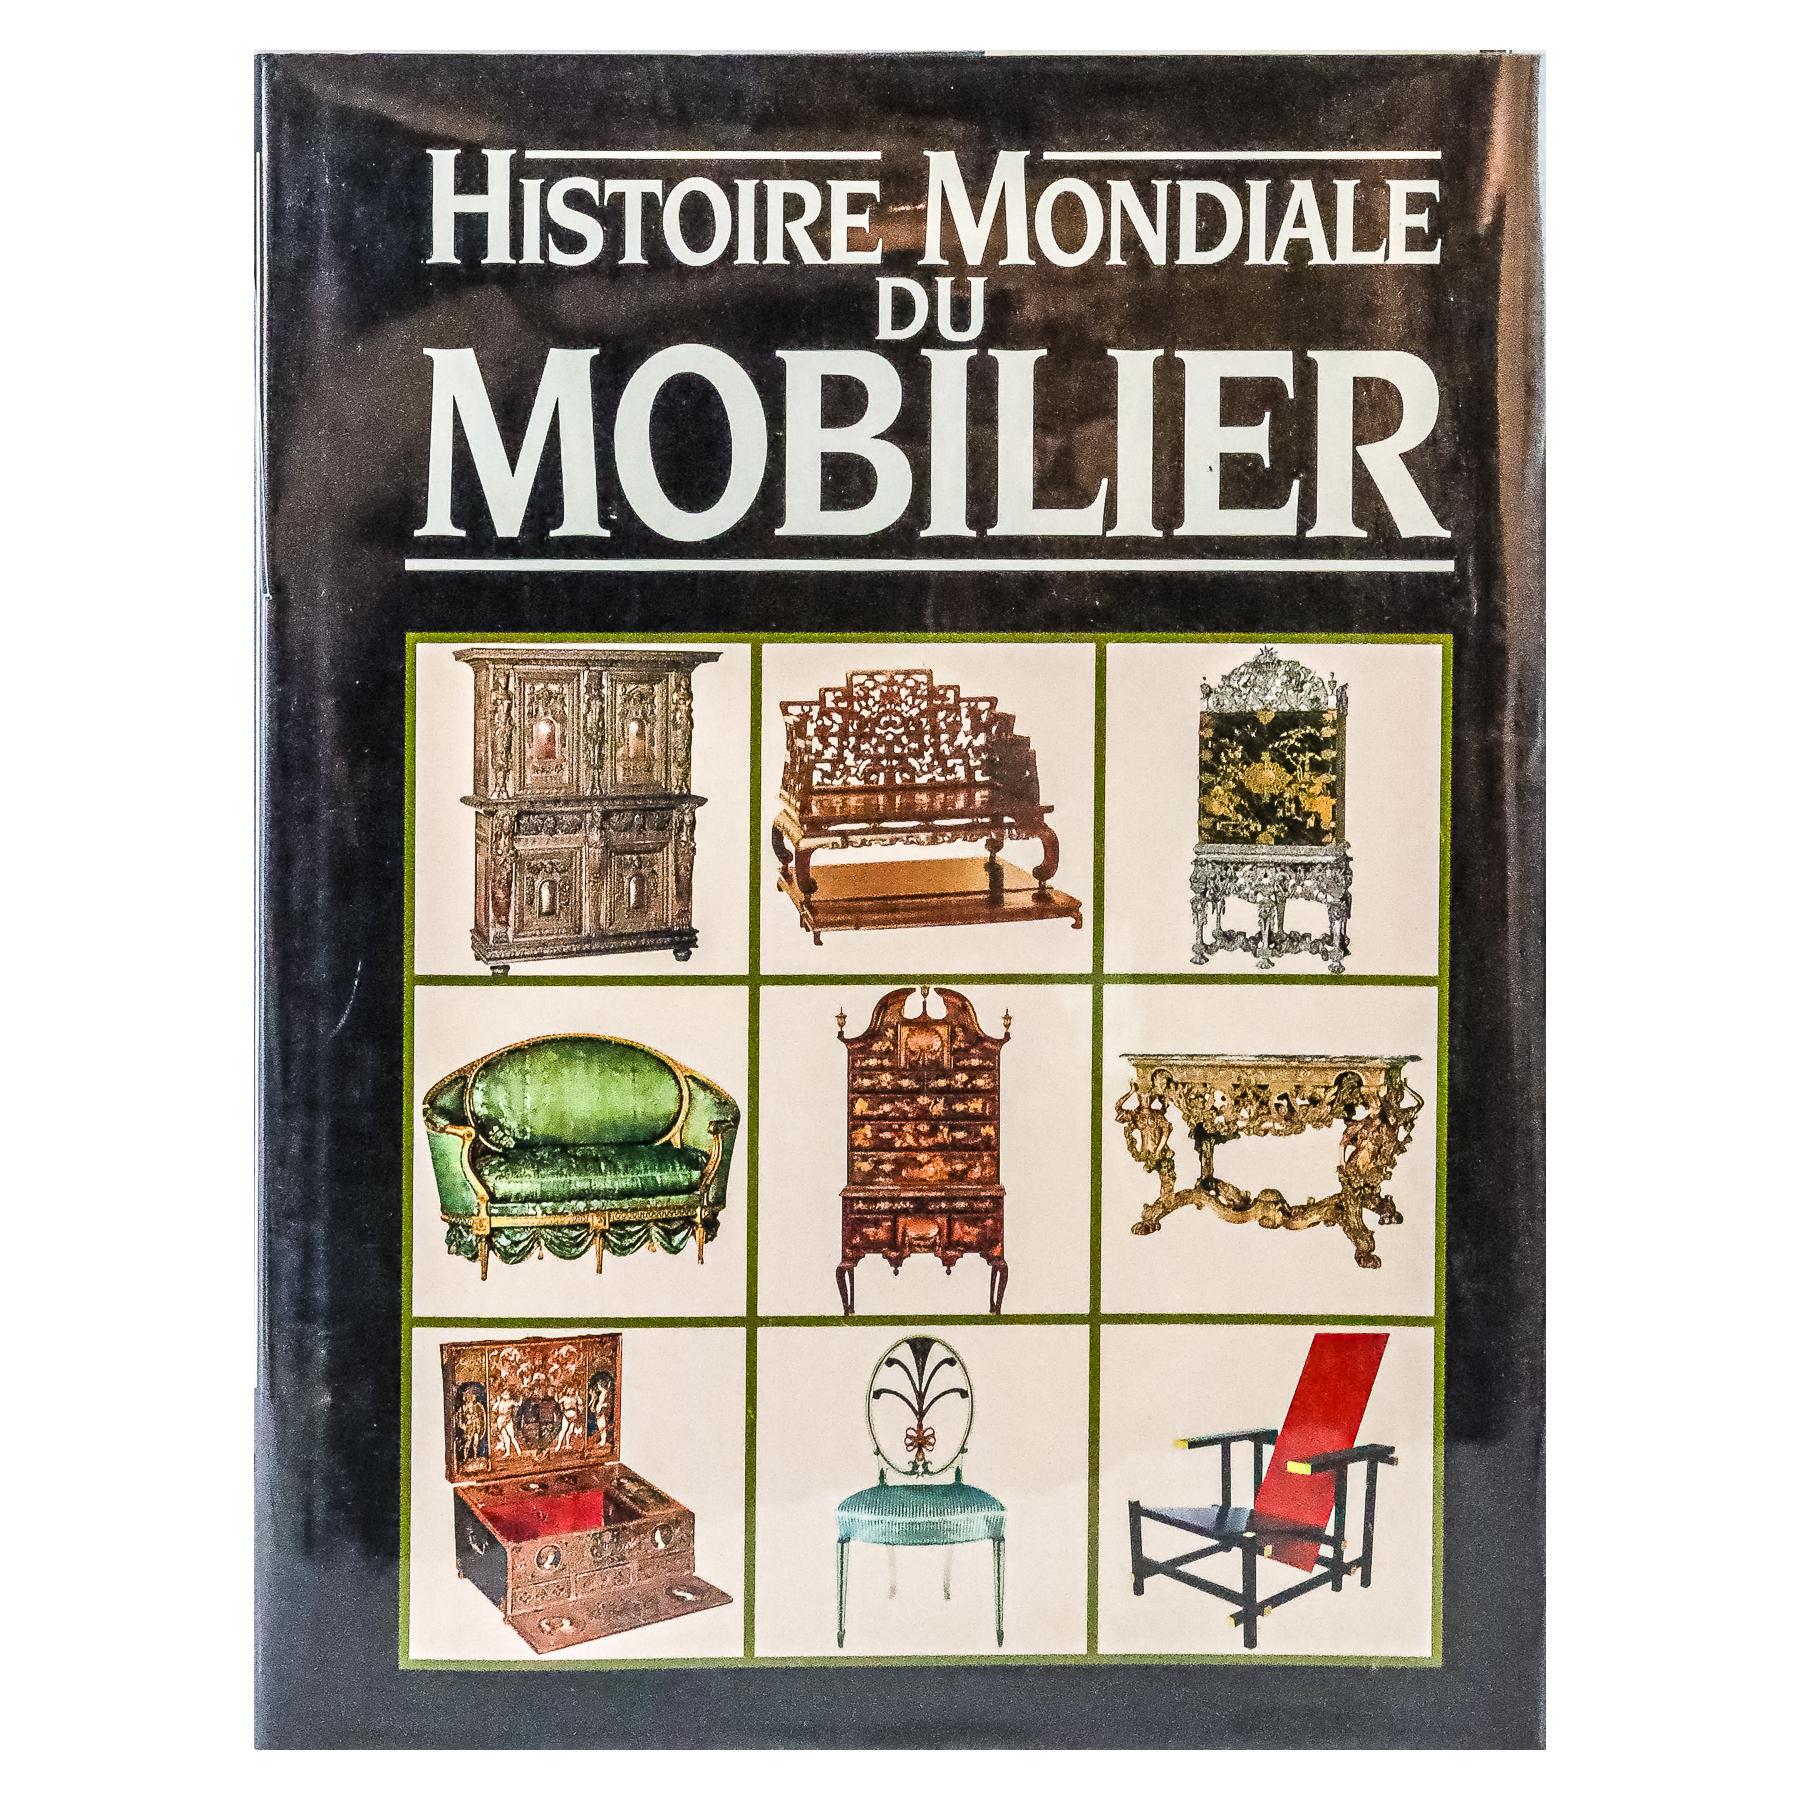 "HISTOIRE MONDIALE DU MOBILIER"